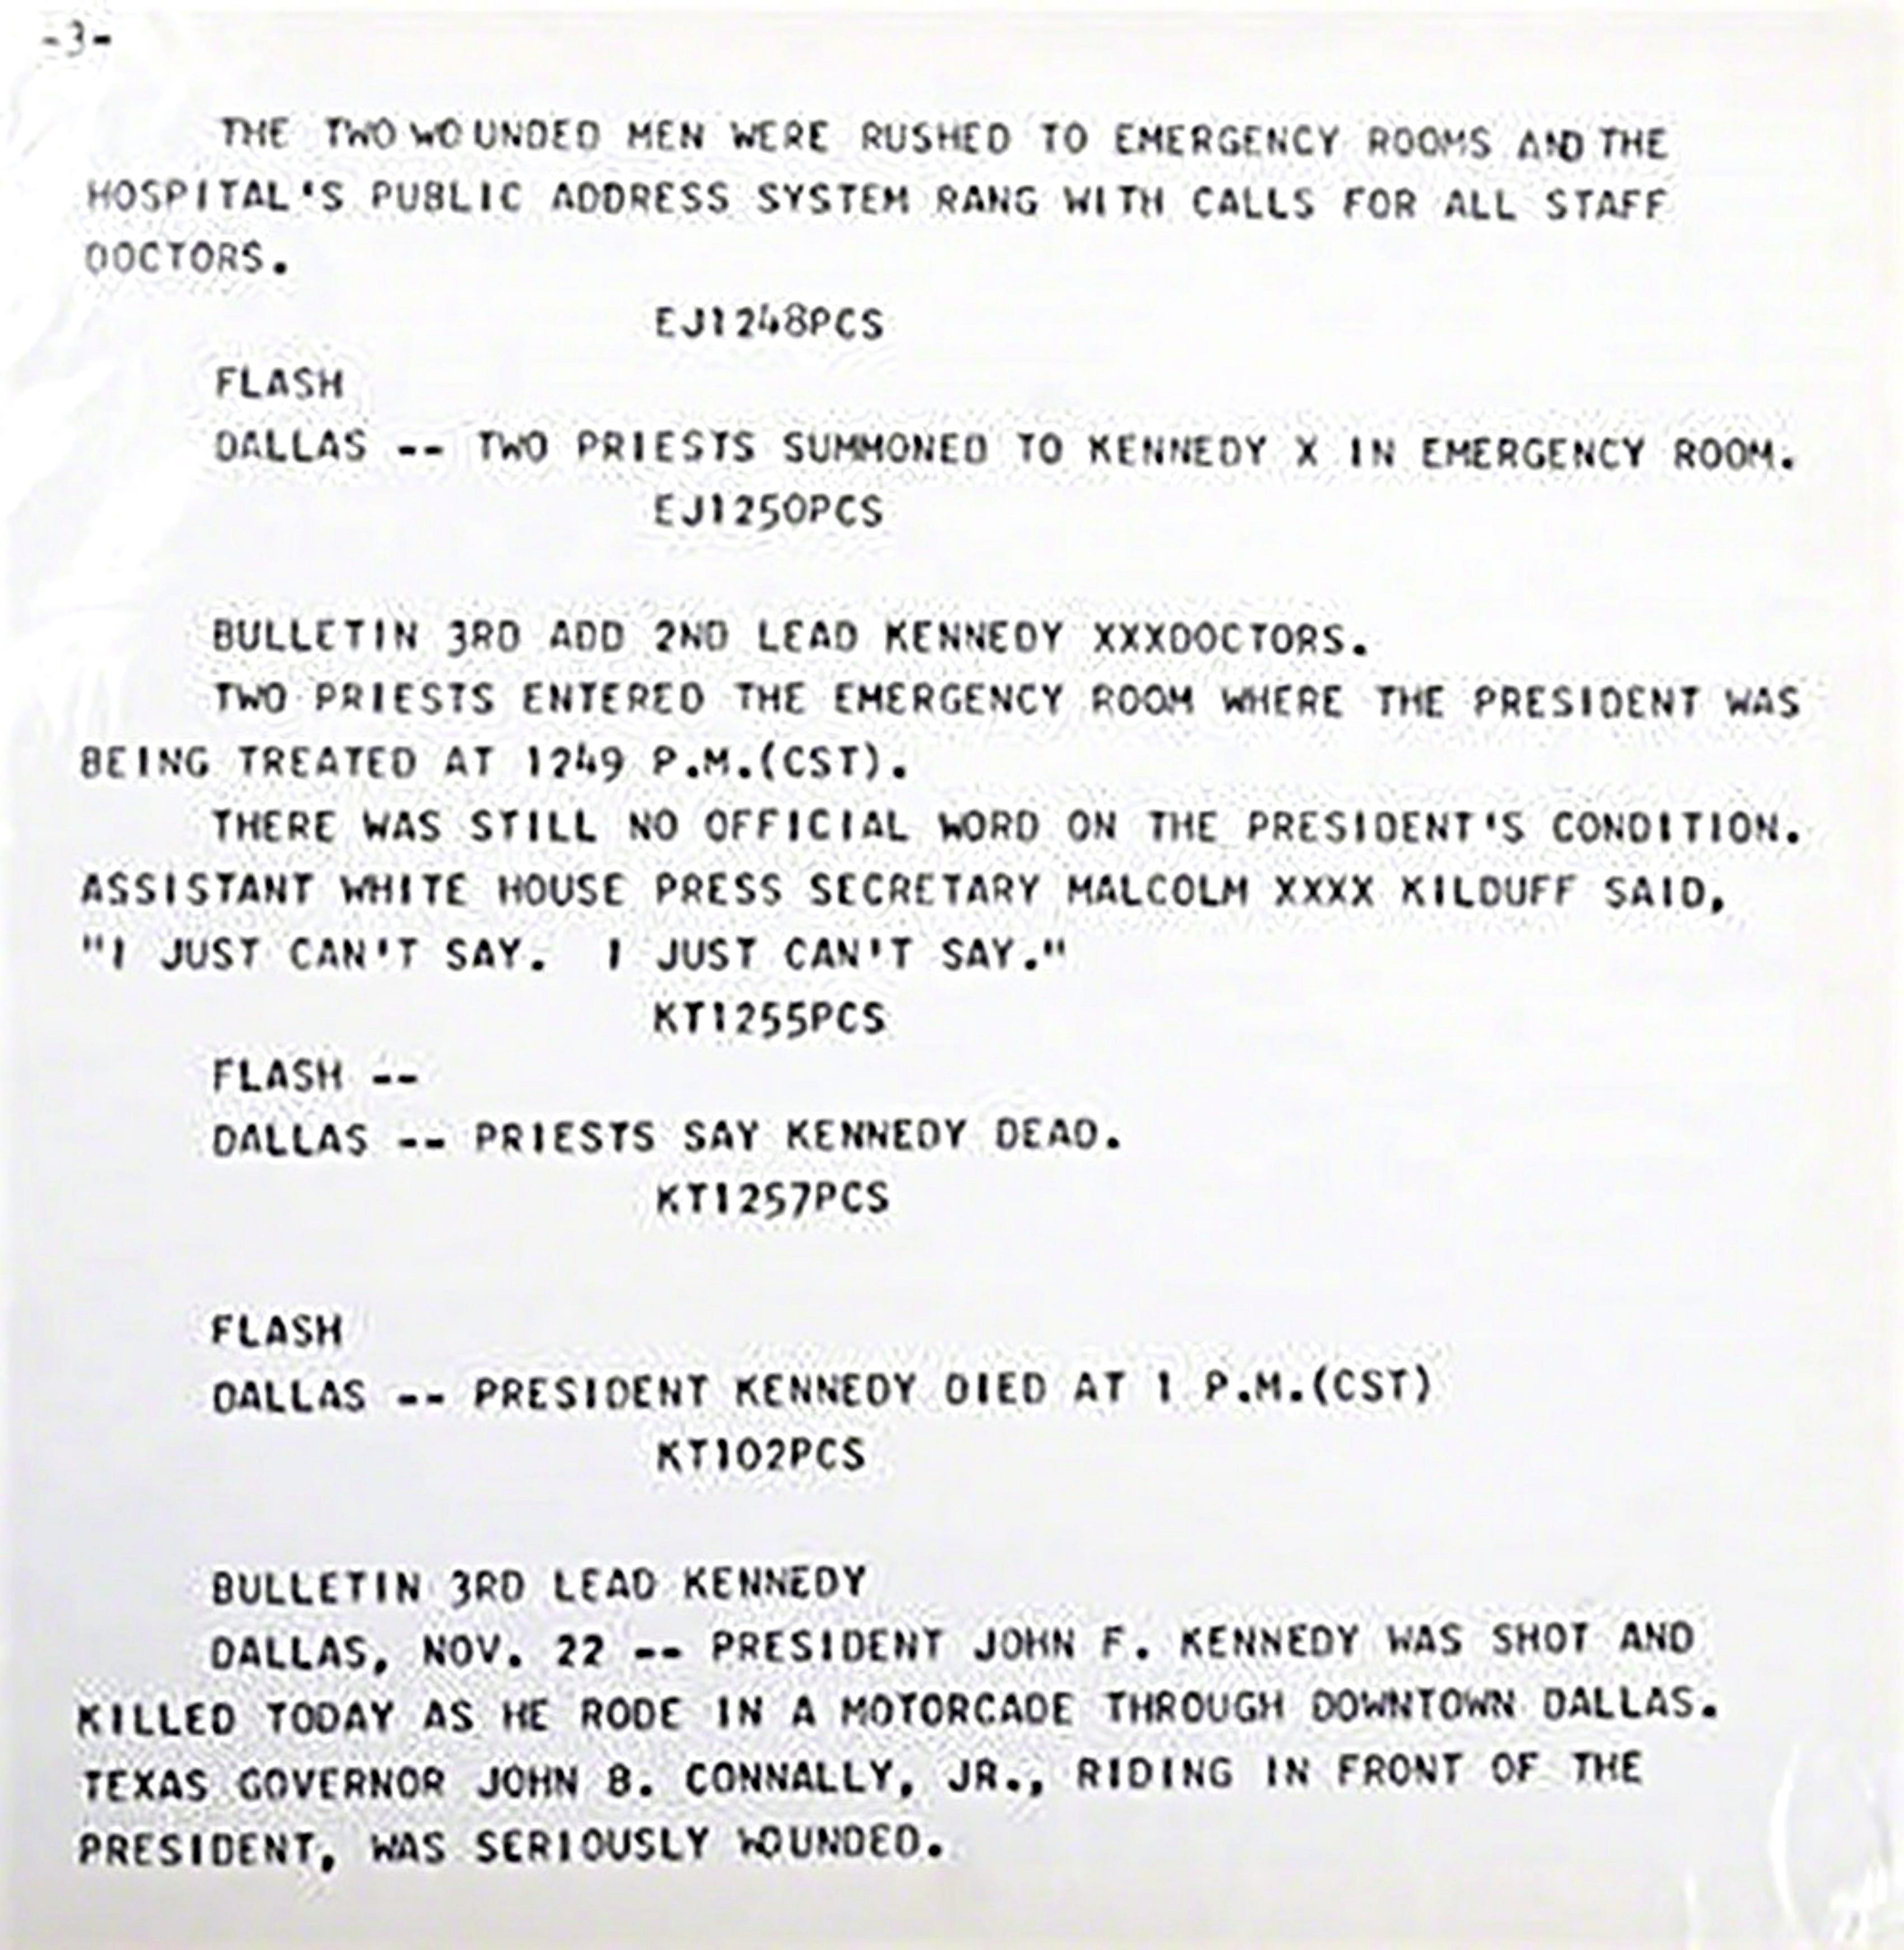 Andy Warhol
Pages de colophon du portefeuille Flash, assassinat de JFK, 1968
2 Sérigraphies séparées : (1) texte sérigraphié sur papier et texte télétype ; (2) feuille de colophon au crayon et numérotée XVII (de l'édition de 26 (chiffres